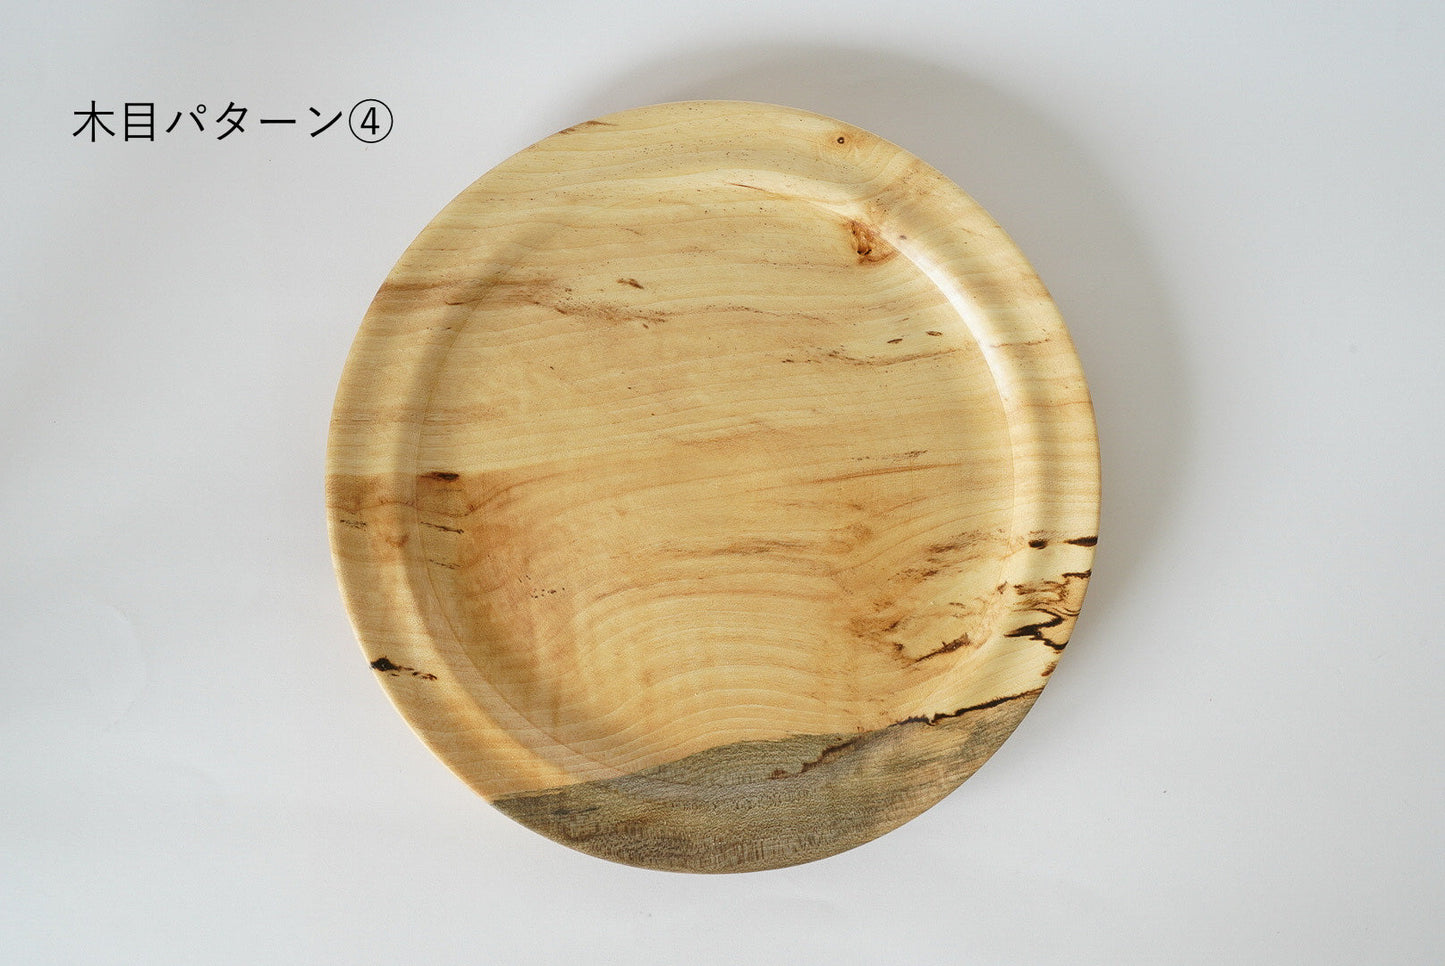 【木と暮らし松弥】楓 スポルテッド杢目 平皿 18cm×1.5cm